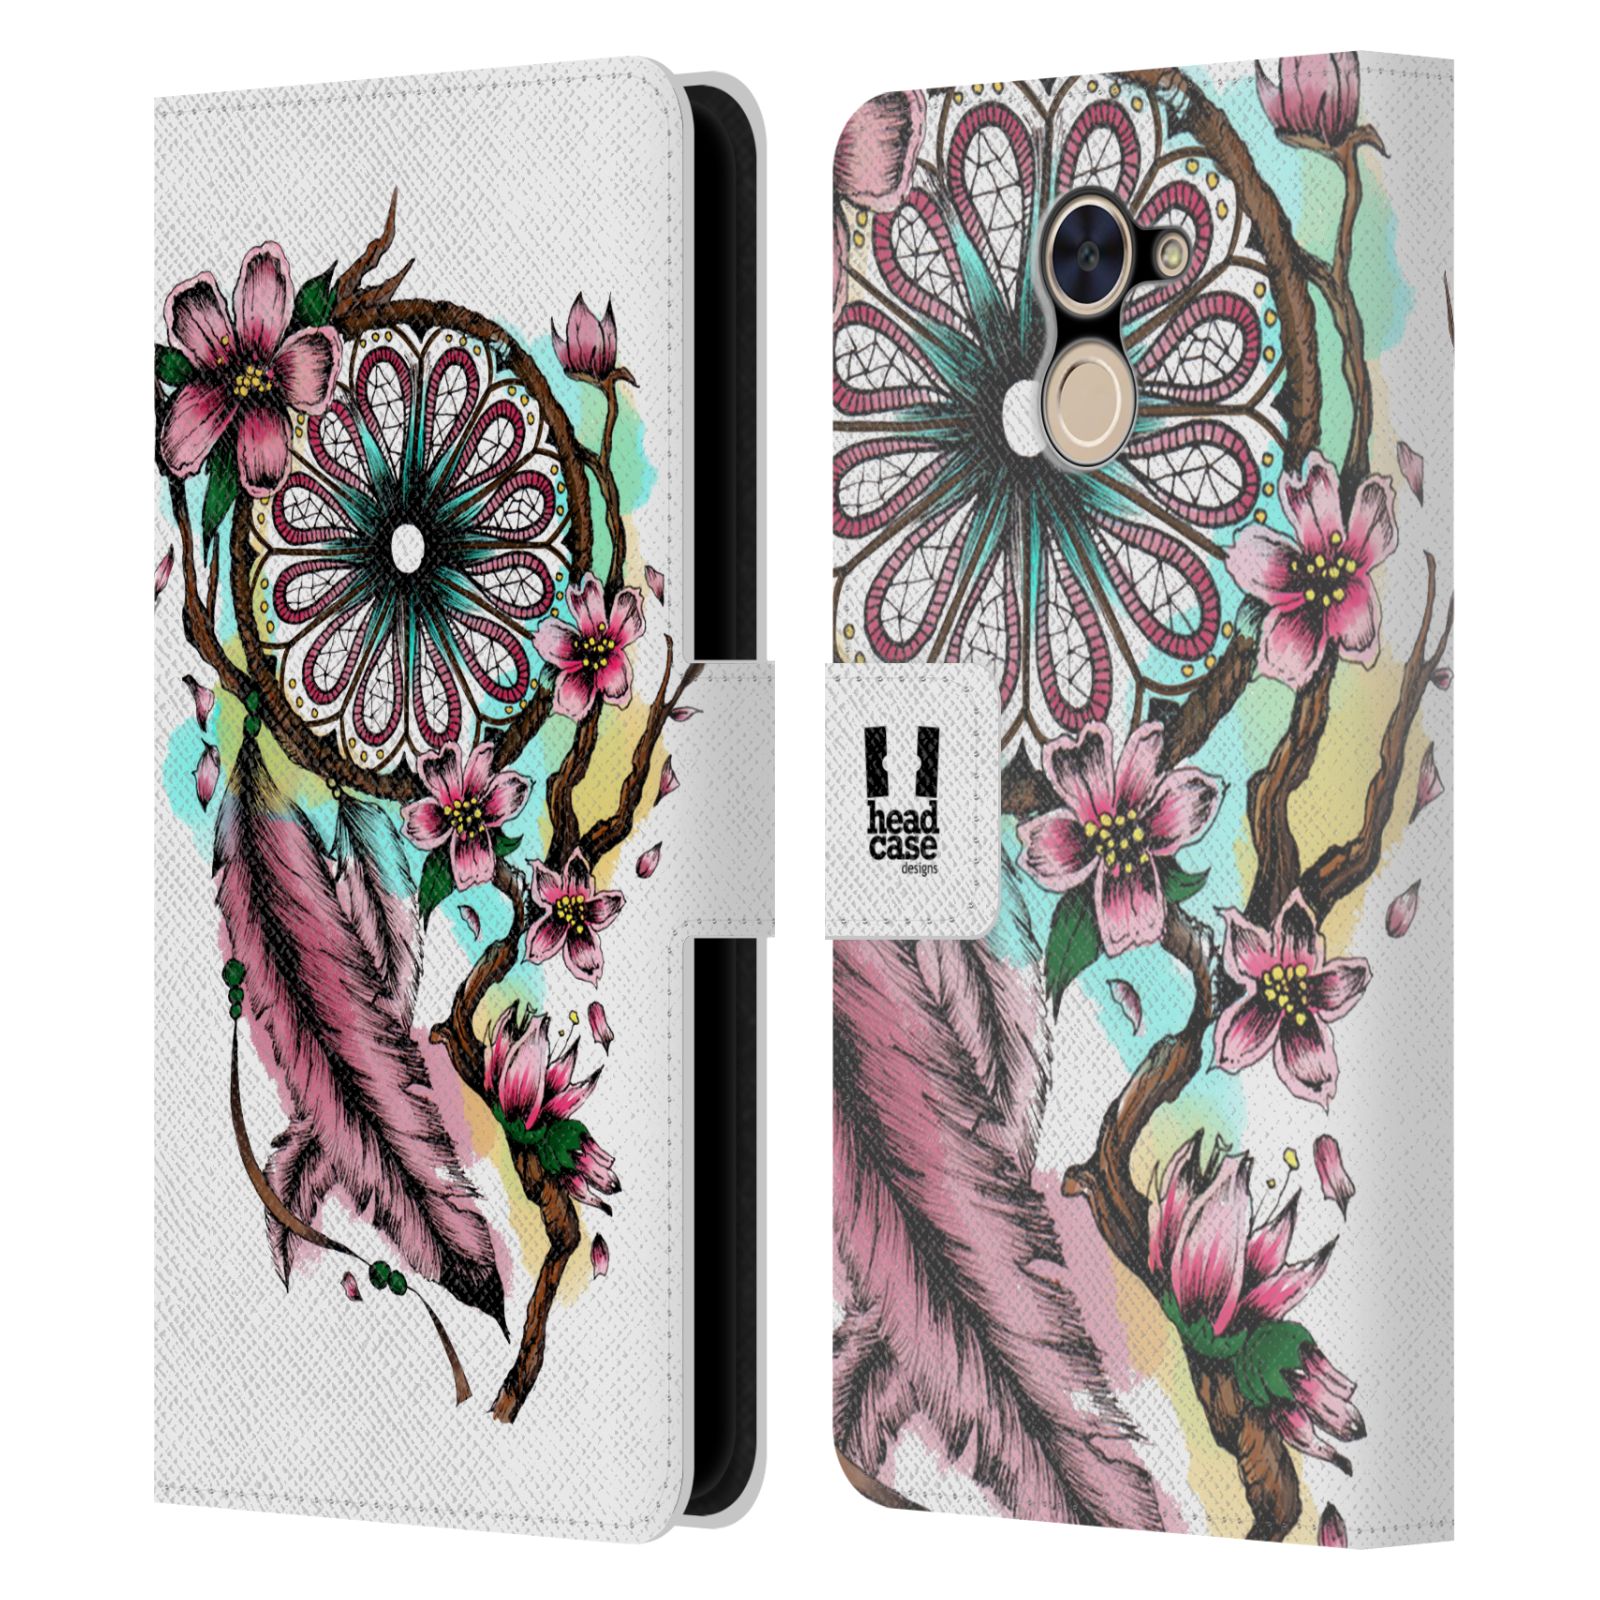 Pouzdro na mobil Huawei Y7 / Y7 Prime - Head Case - Lapač snů květy fialová